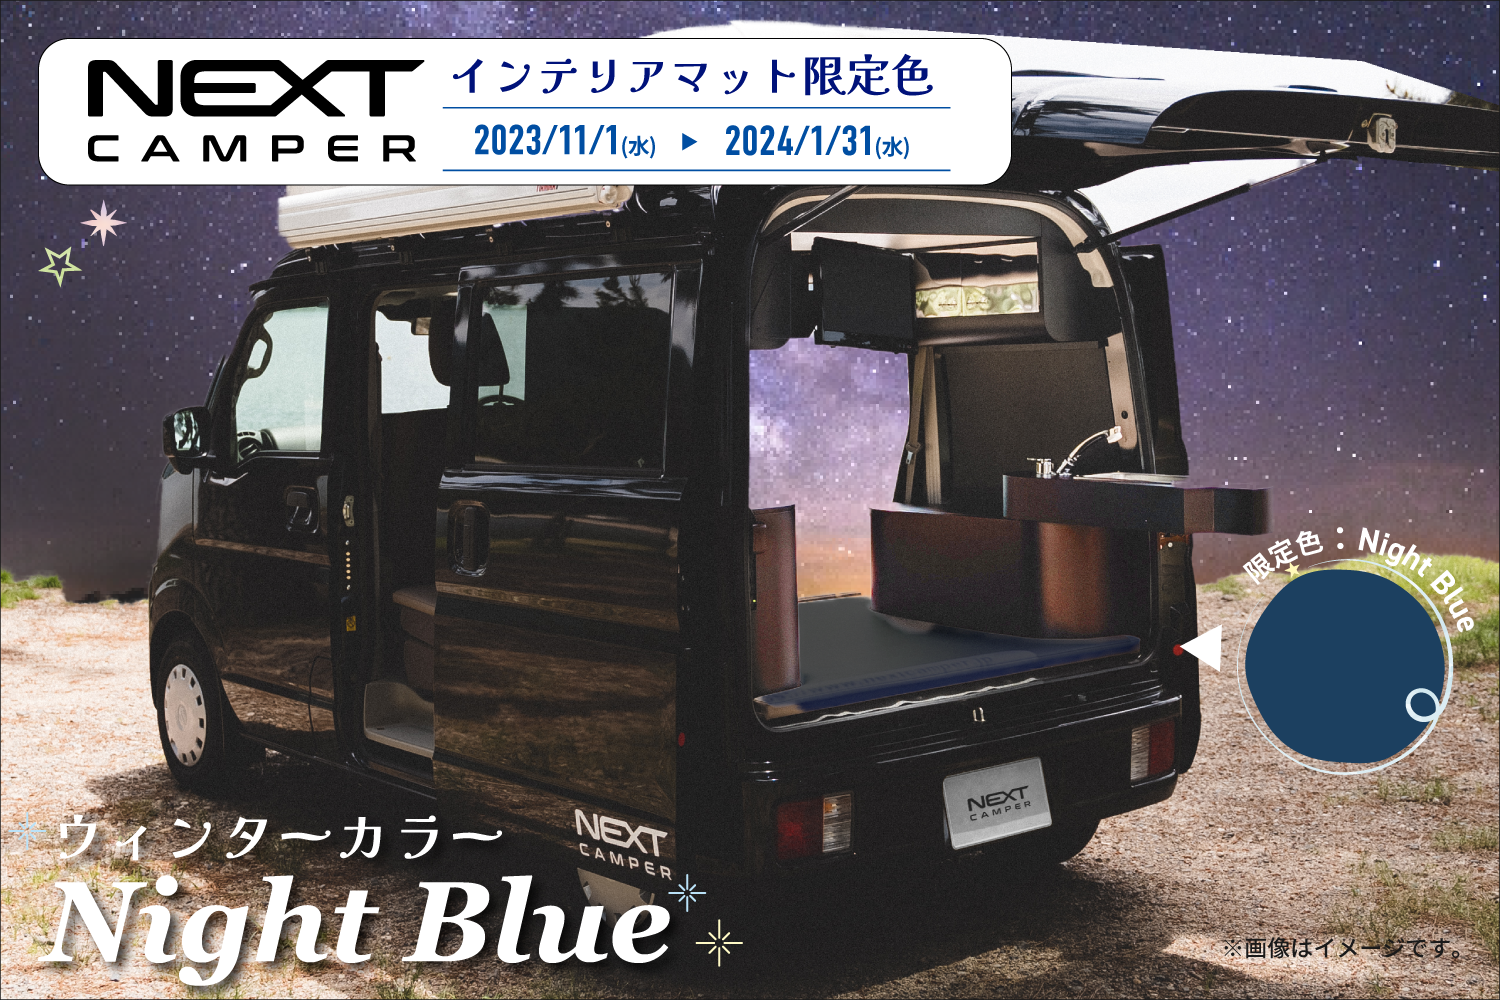 「ネクストキャンパー」オプションマットに、特別ウィンターカラー「Night Blue＜ナイトブルー＞」が期間限定で登場！